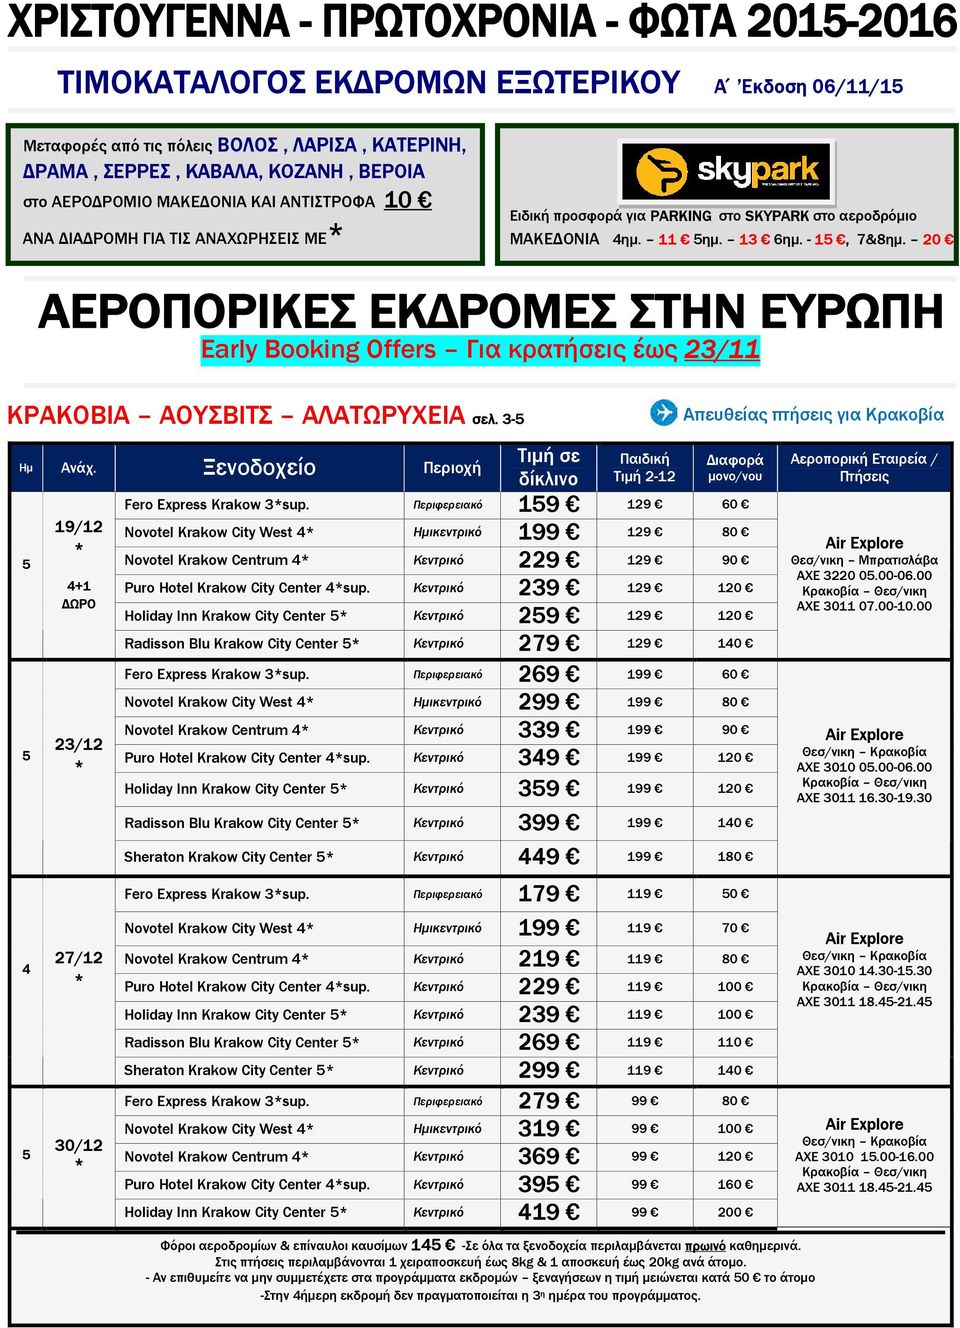 3- Απευθείας πτήσεις για Κρακοβία 19/12 +1 ΩΡΟ Παιδική Τιµή 2-12 Fero Express Krakow 3sup.